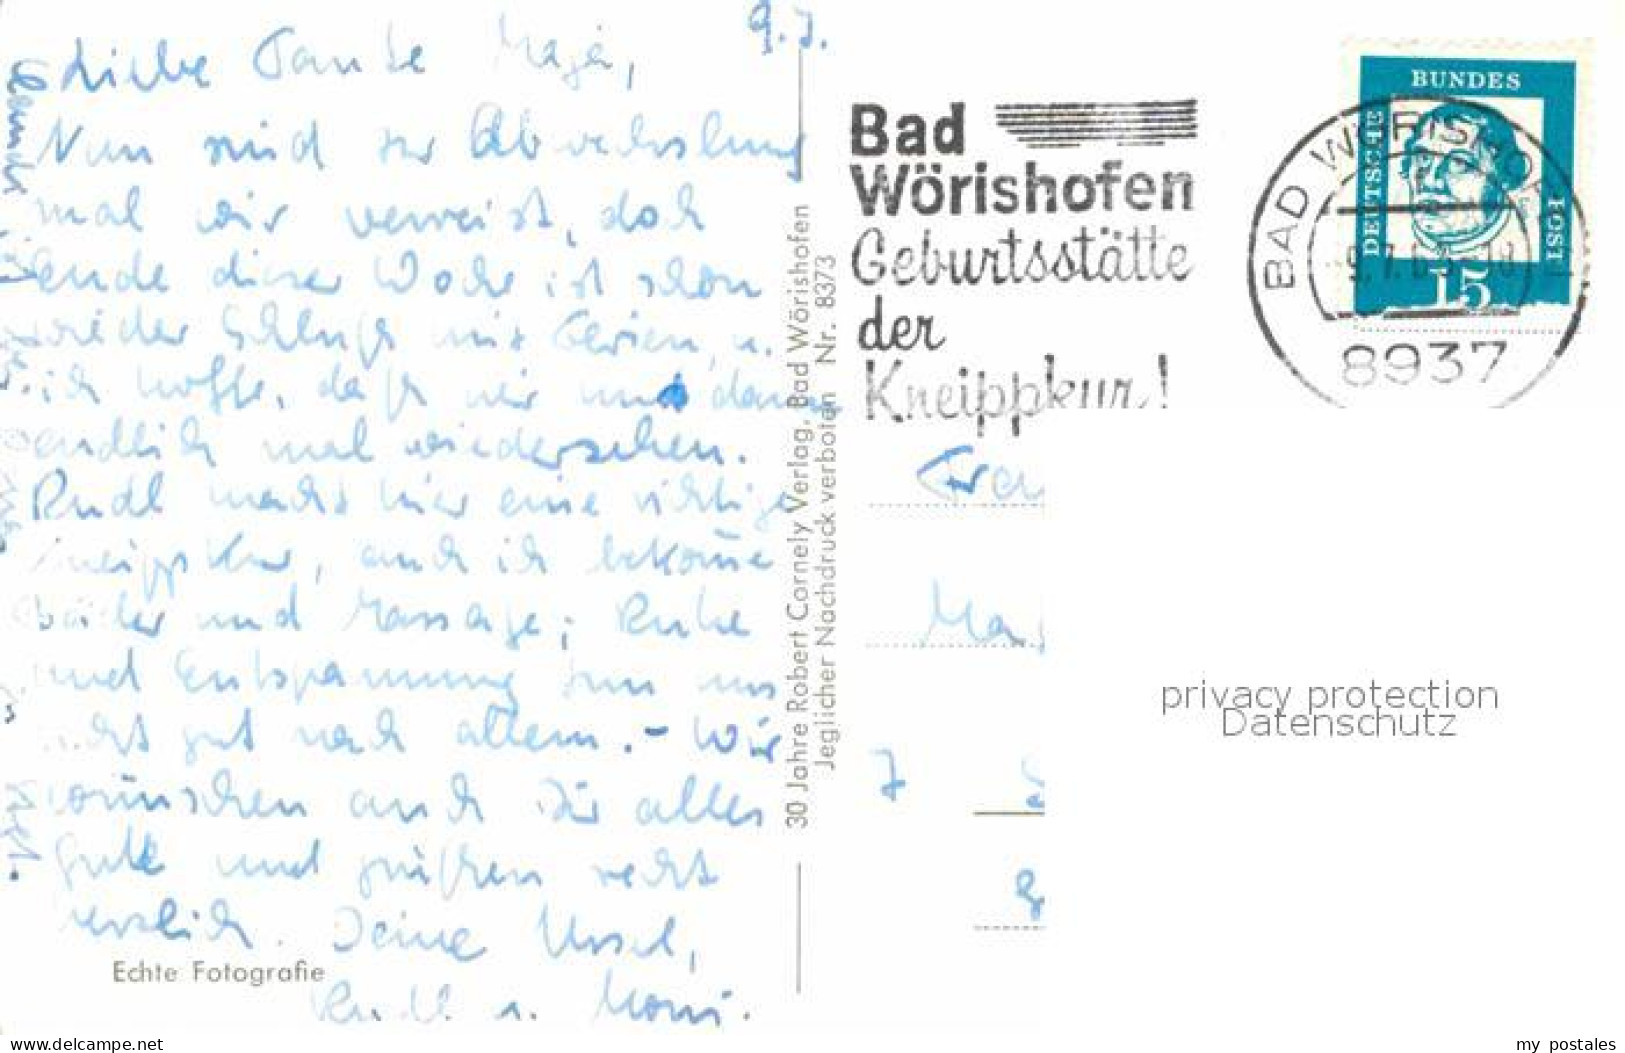 72749213 Bad Woerishofen Weichsquelle Am Tannenbaum Bad Woerishofen - Bad Wörishofen